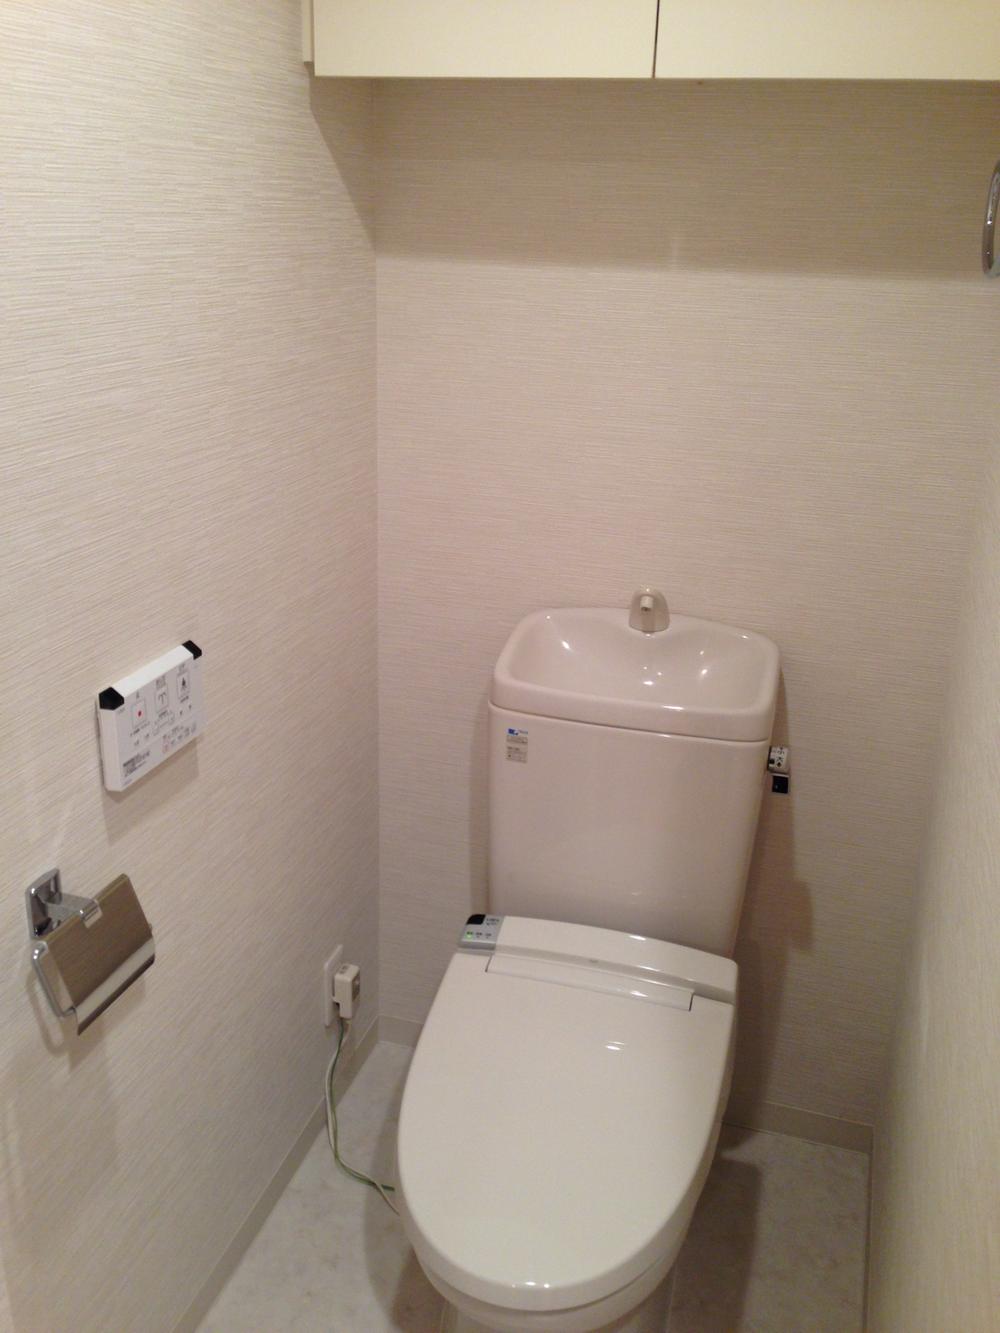 Toilet. Indoor (15 May 2013) Shooting